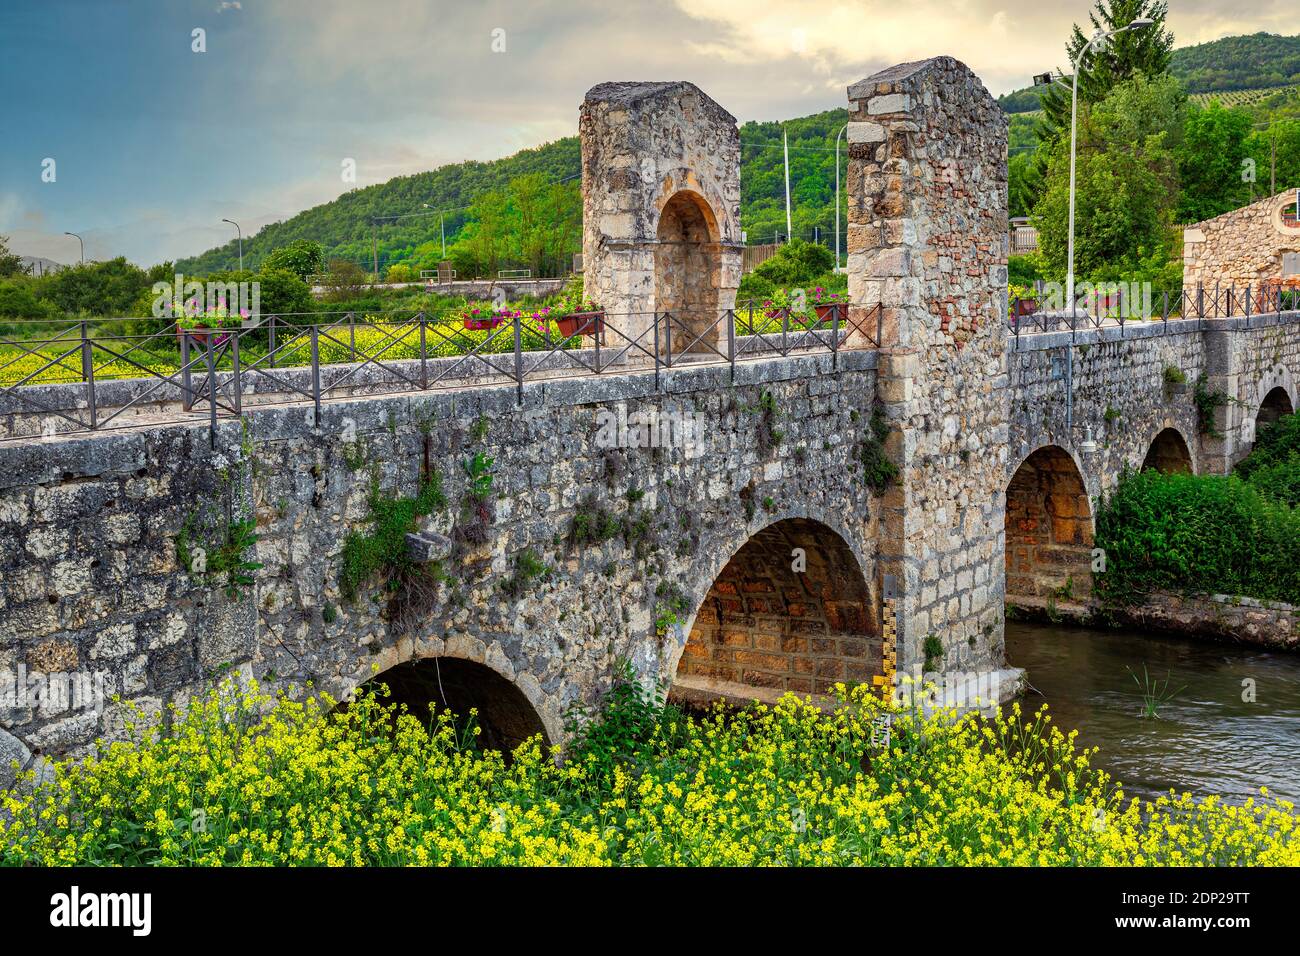 Die römische Brücke von Campana, die erste auf dem Fluss Aterno. Abruzzen, Italien, Europa Stockfoto